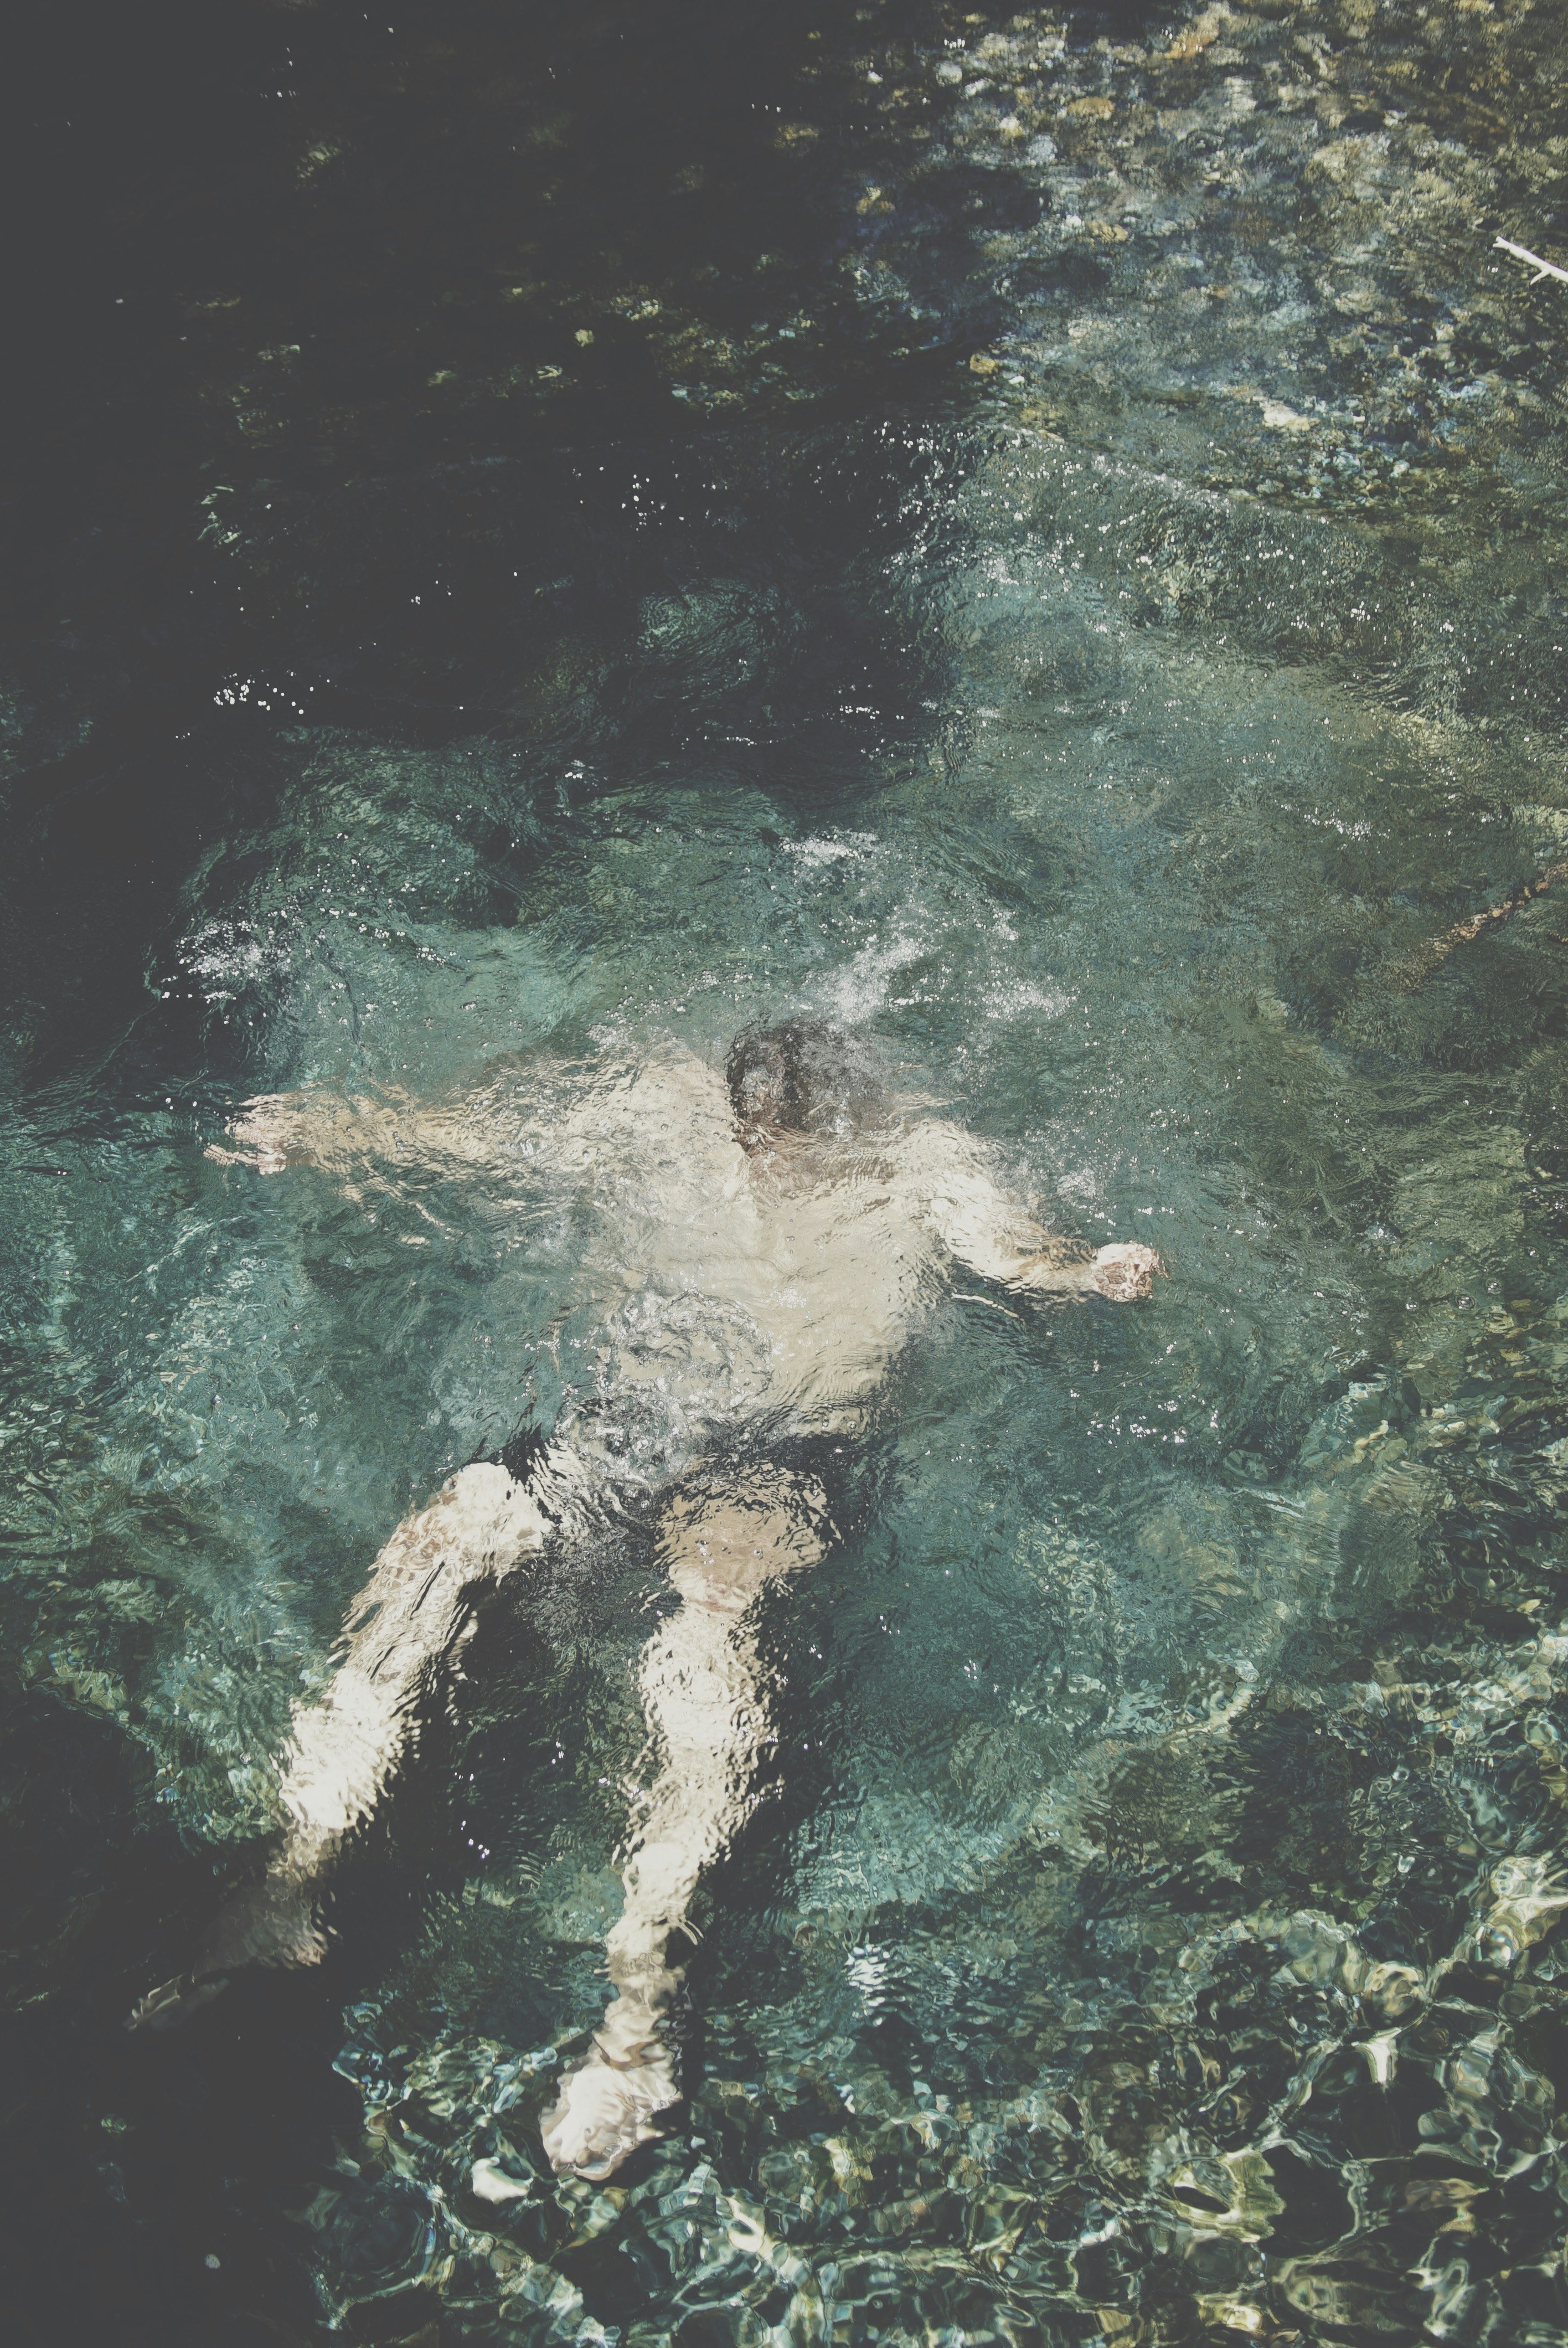 person submerged underwater